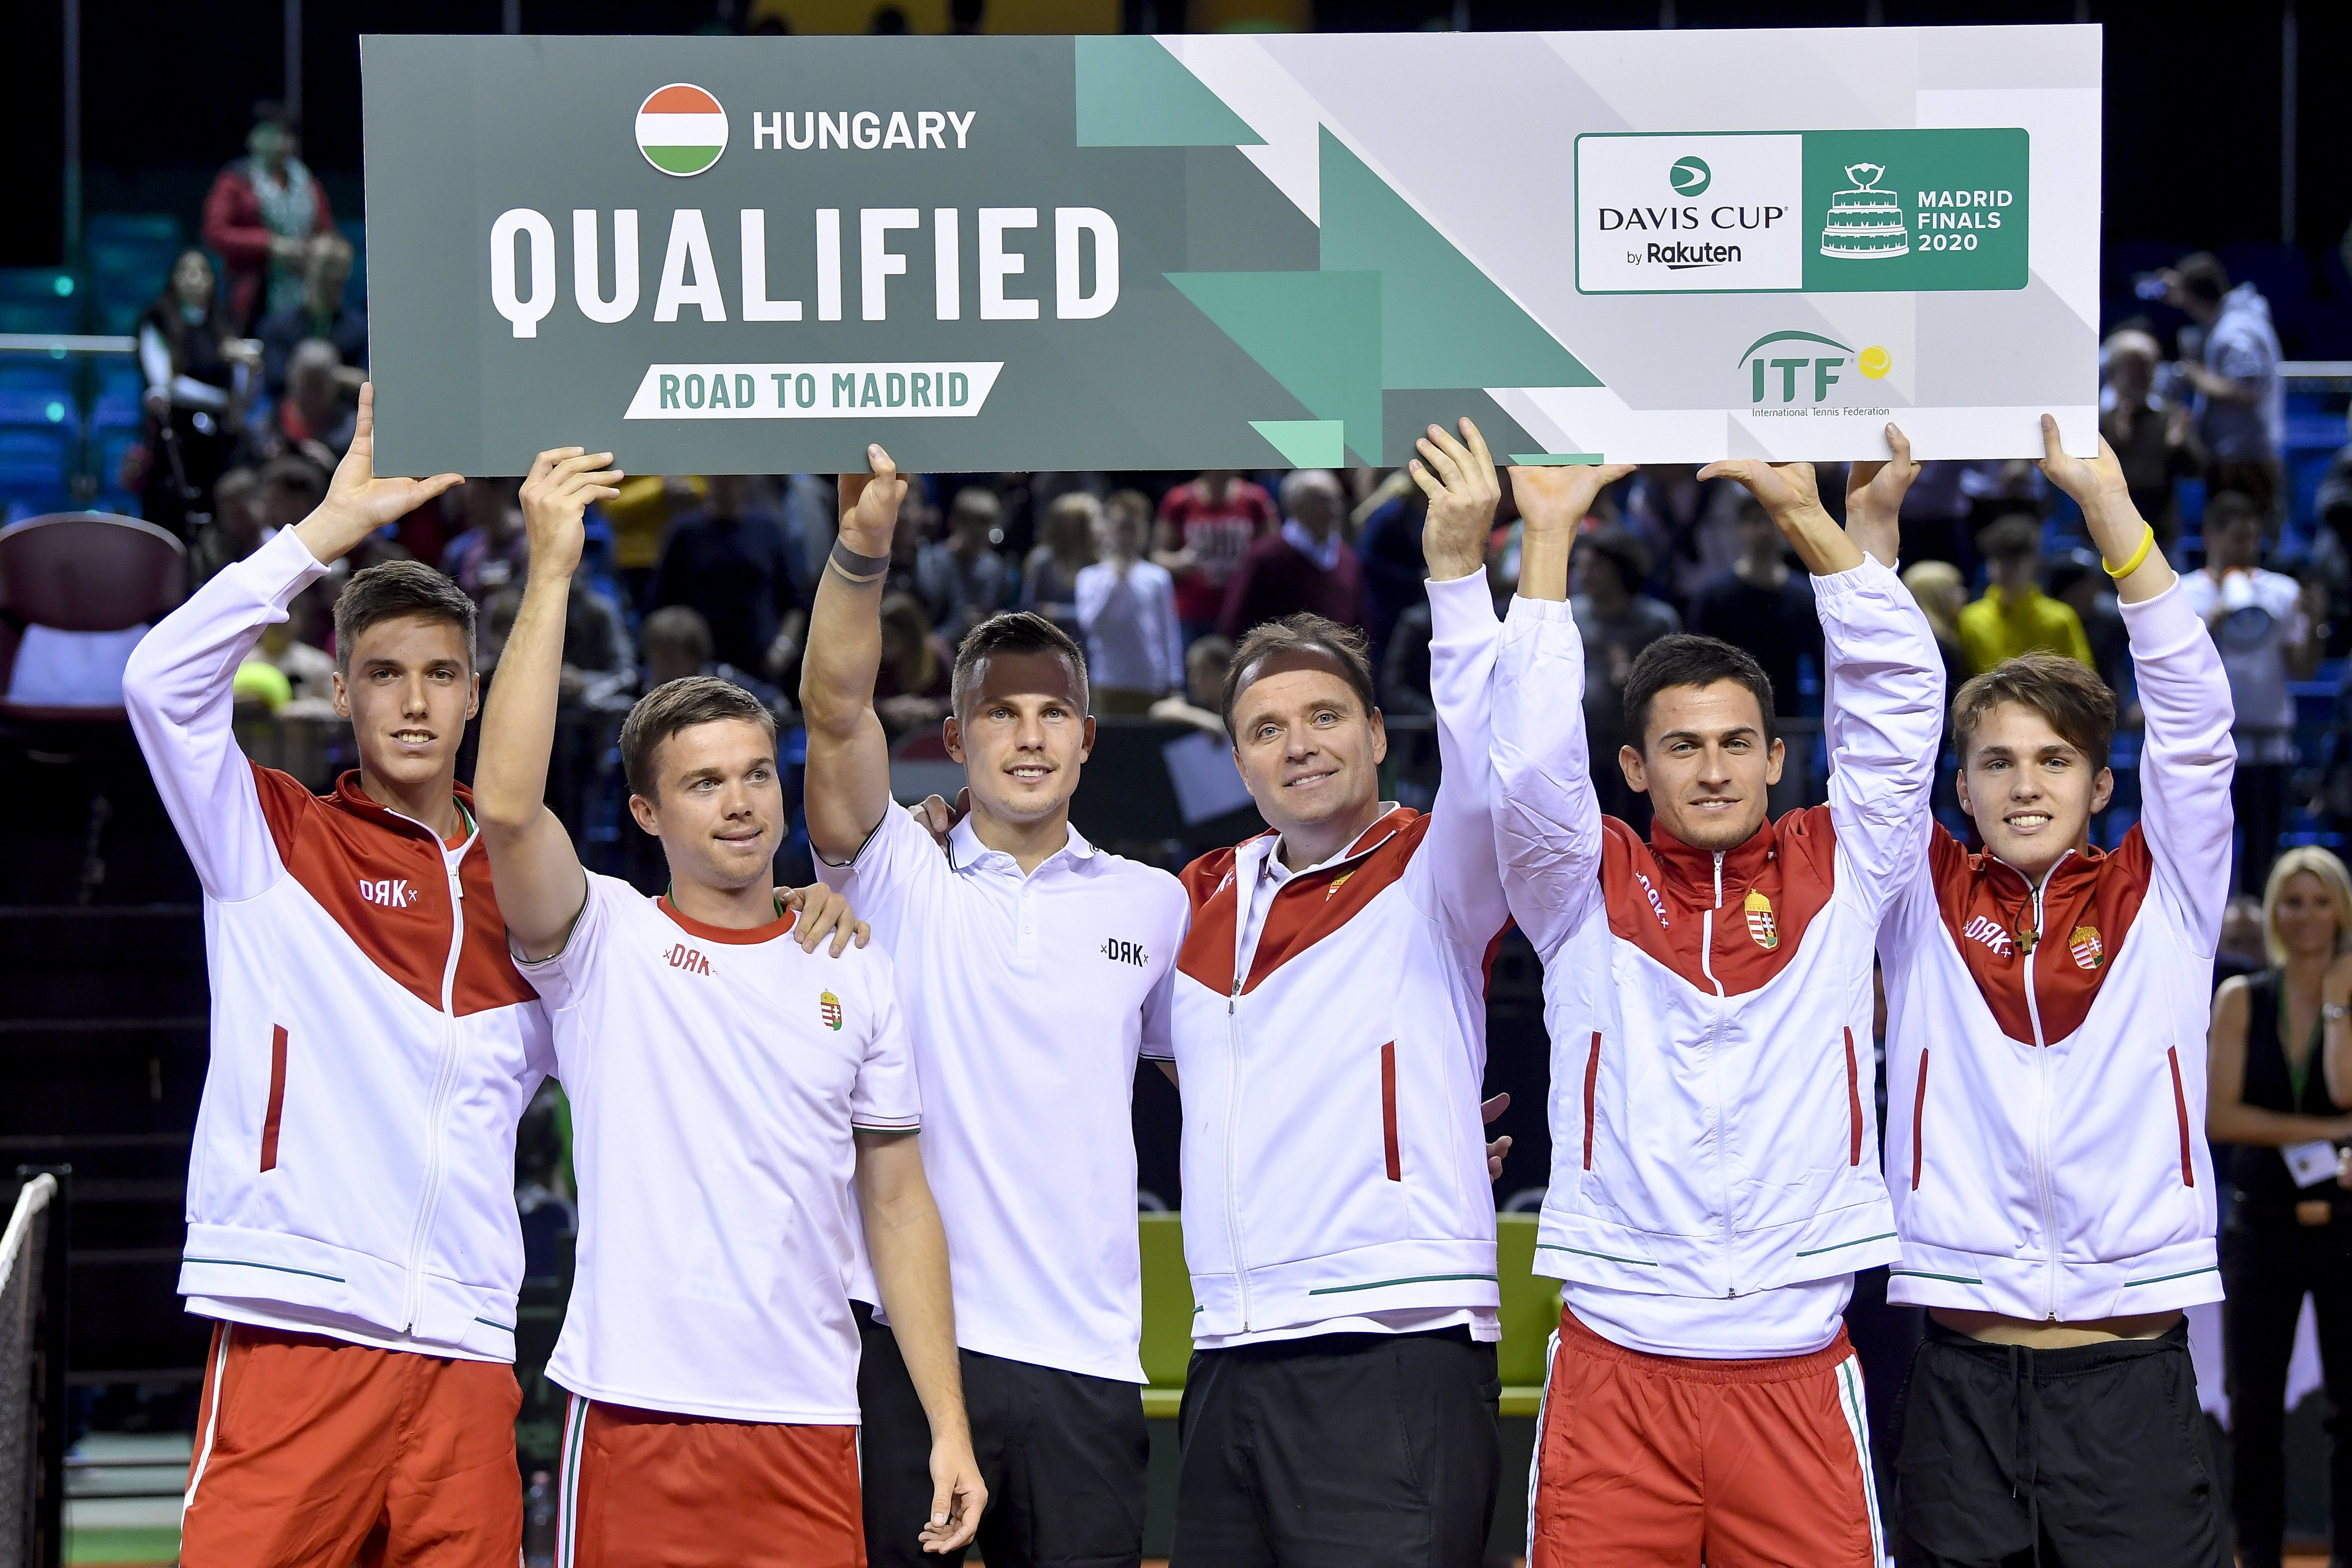 Ungarisches-Tennis-Wunder: Nationalteam spielt Davis Cup Finale am Wochenende